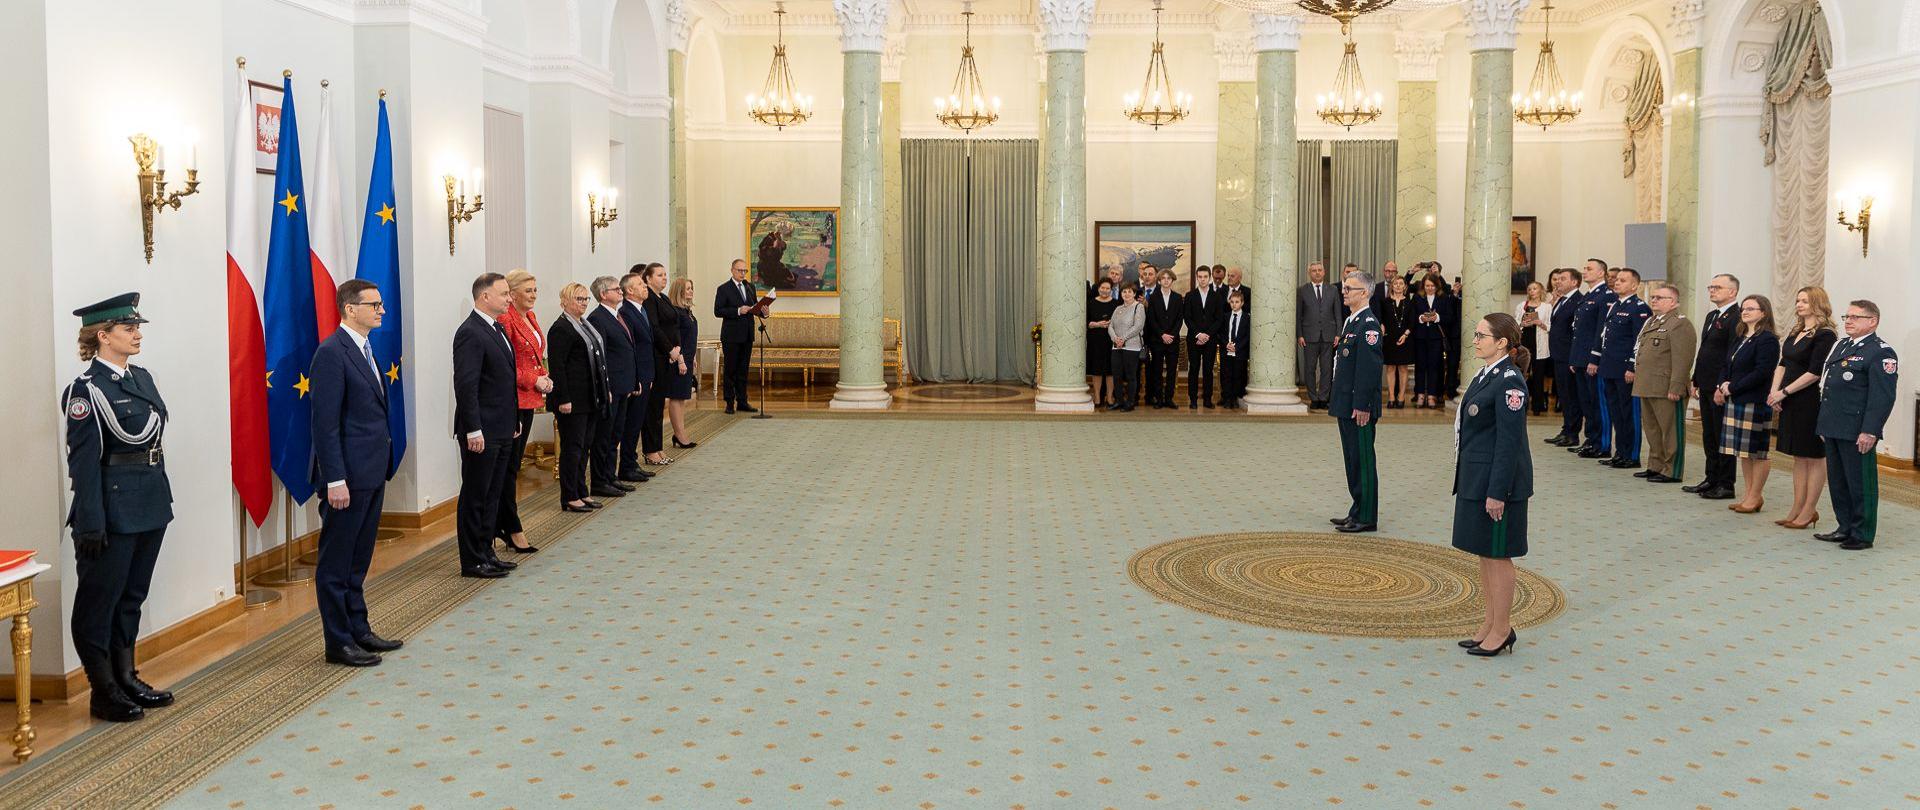 Uroczystość wręczania nominacji generalskich w Pałacu Prezydenckim.